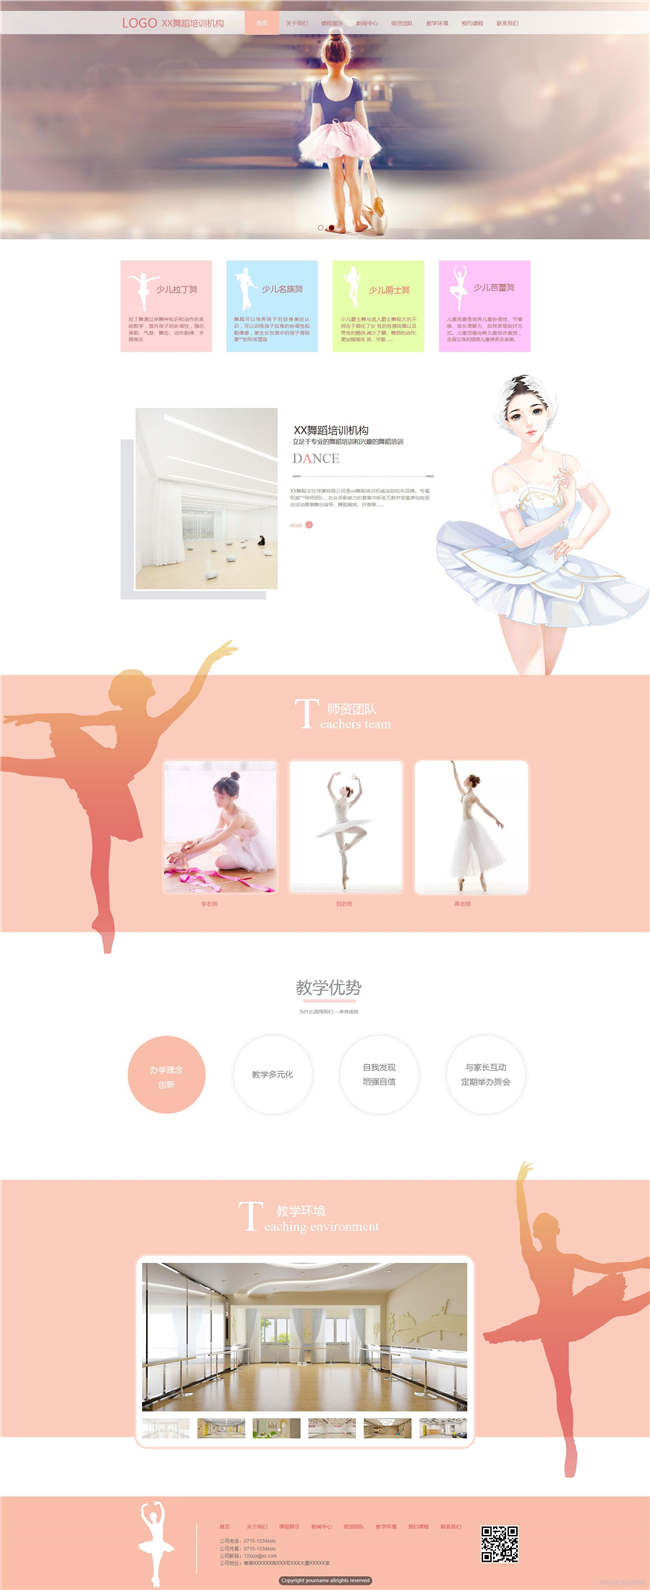 舞蹈学校文教书籍文化曲艺机构响应式网站WordPress模板演示图